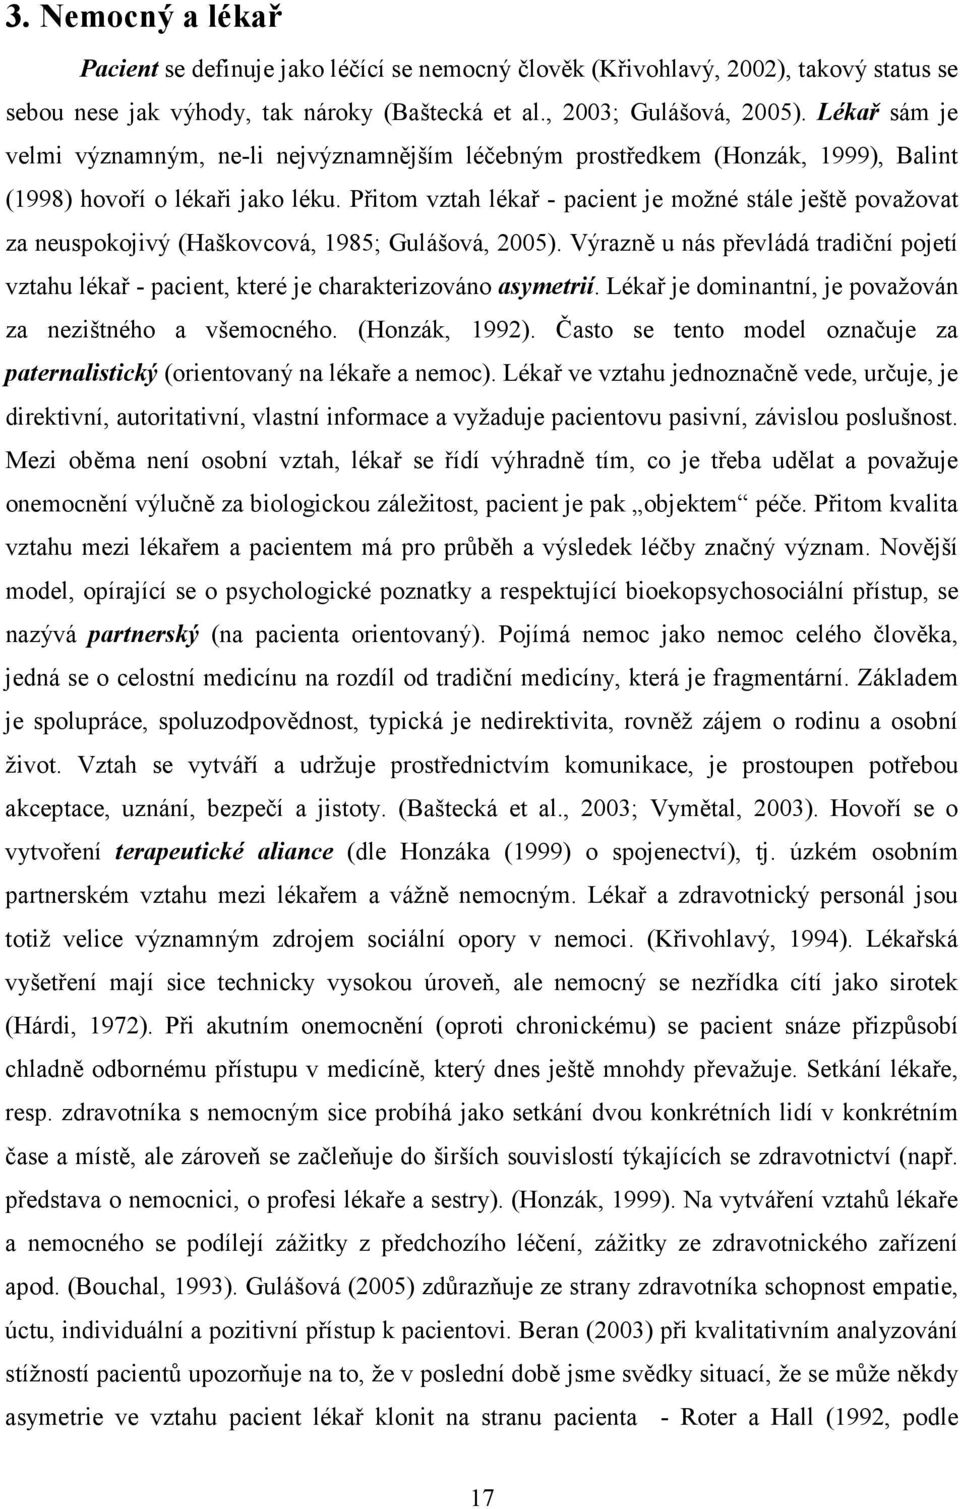 Přitom vztah lékař - pacient je možné stále ještě považovat za neuspokojivý (Haškovcová, 1985; Gulášová, 2005).